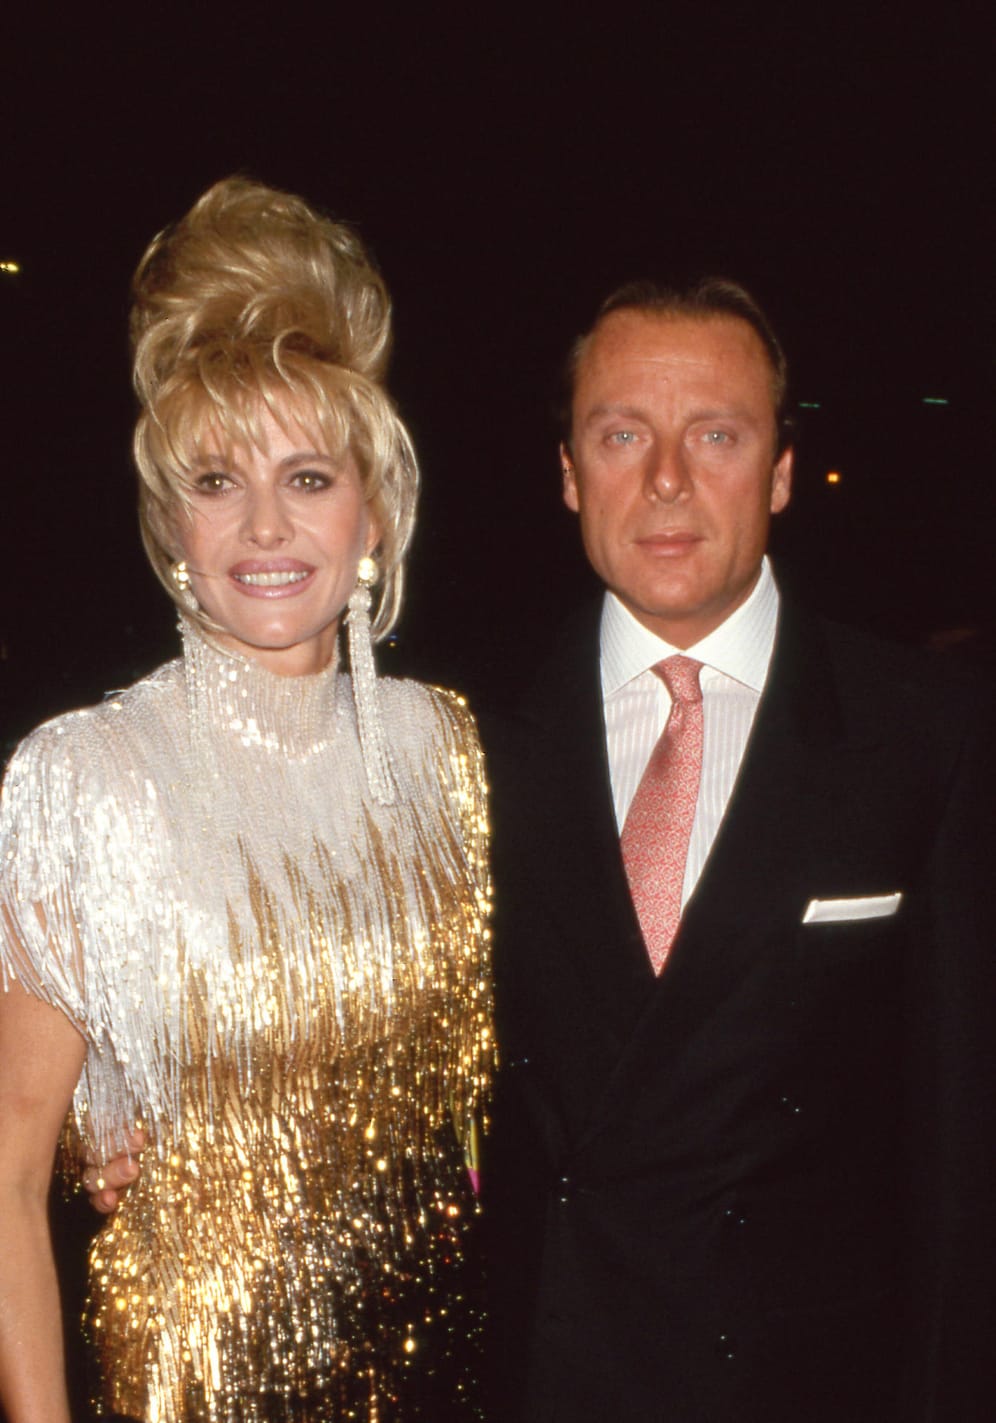 Von 1995 bis 1997 war Ivana Trump mit dem italienischen Geschäftsmann Riccardo Mazzucchelli verheiratet.